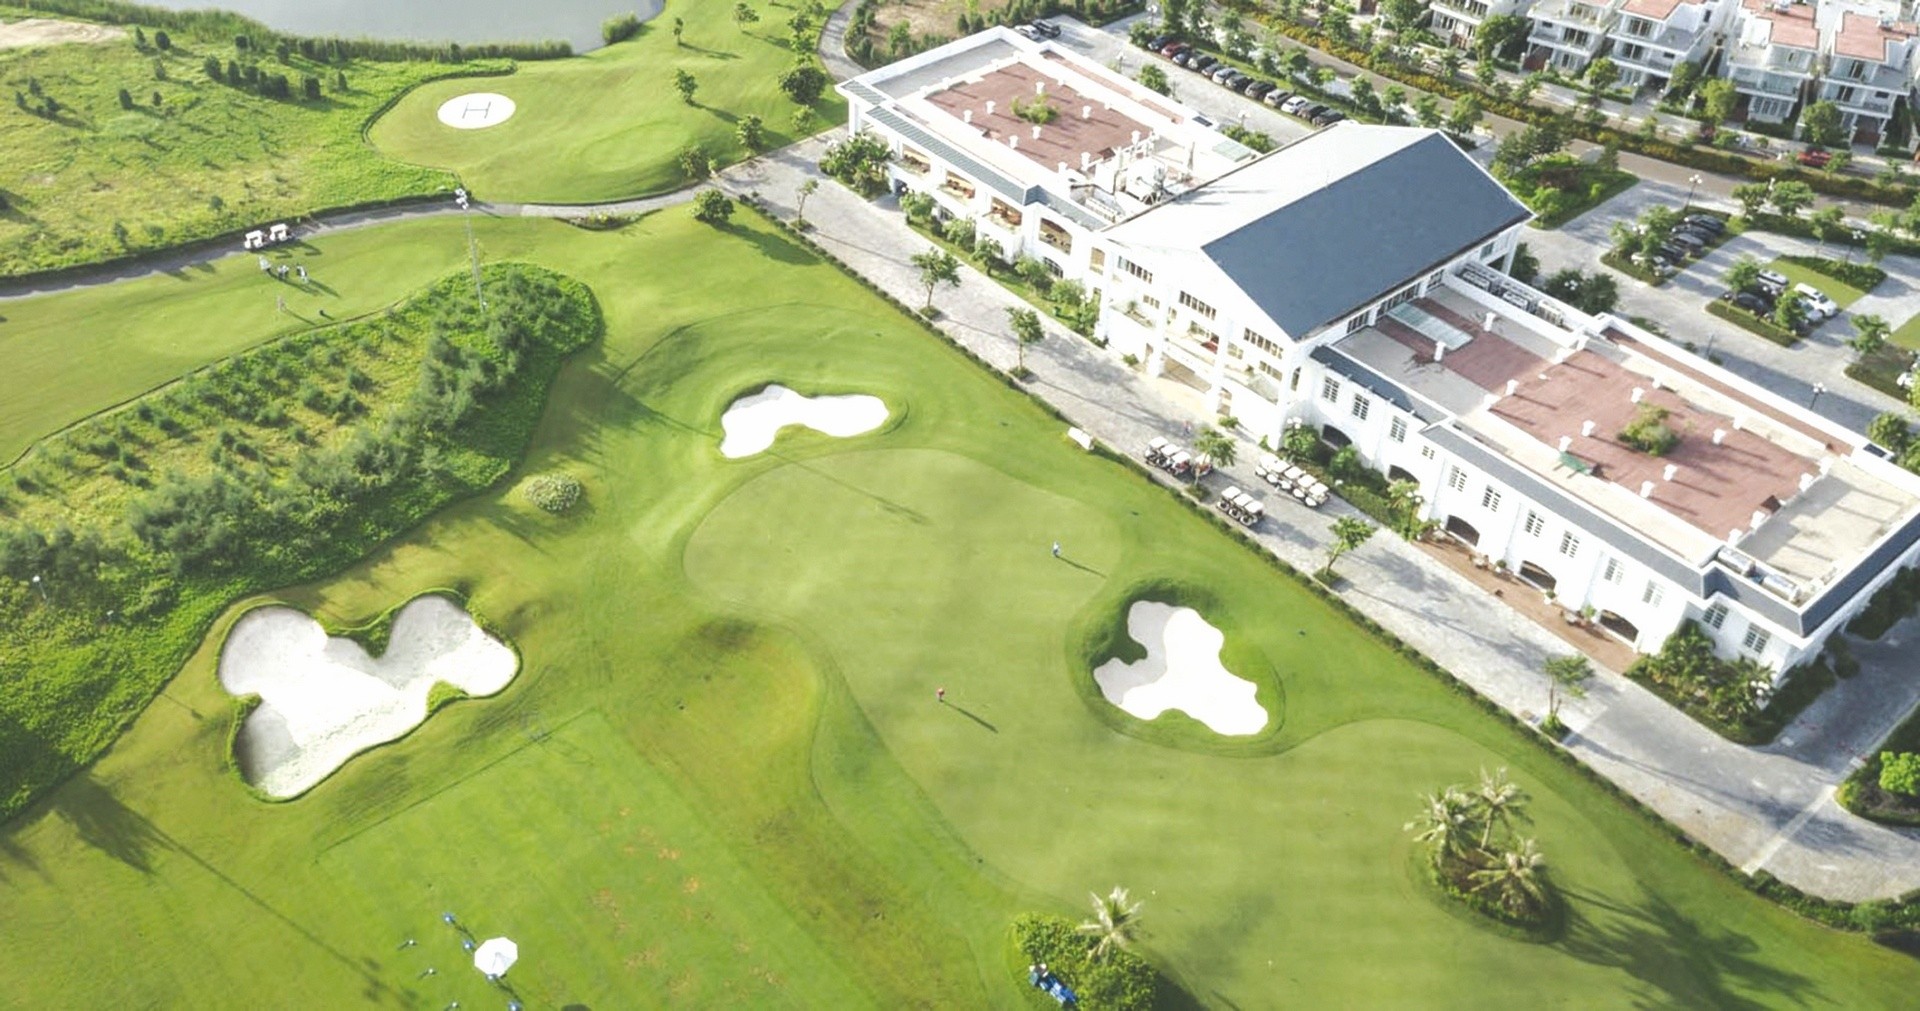 
Bất động sản sân golf luôn thuộc danh sách ưu tiên đầu tư của khách hàng
